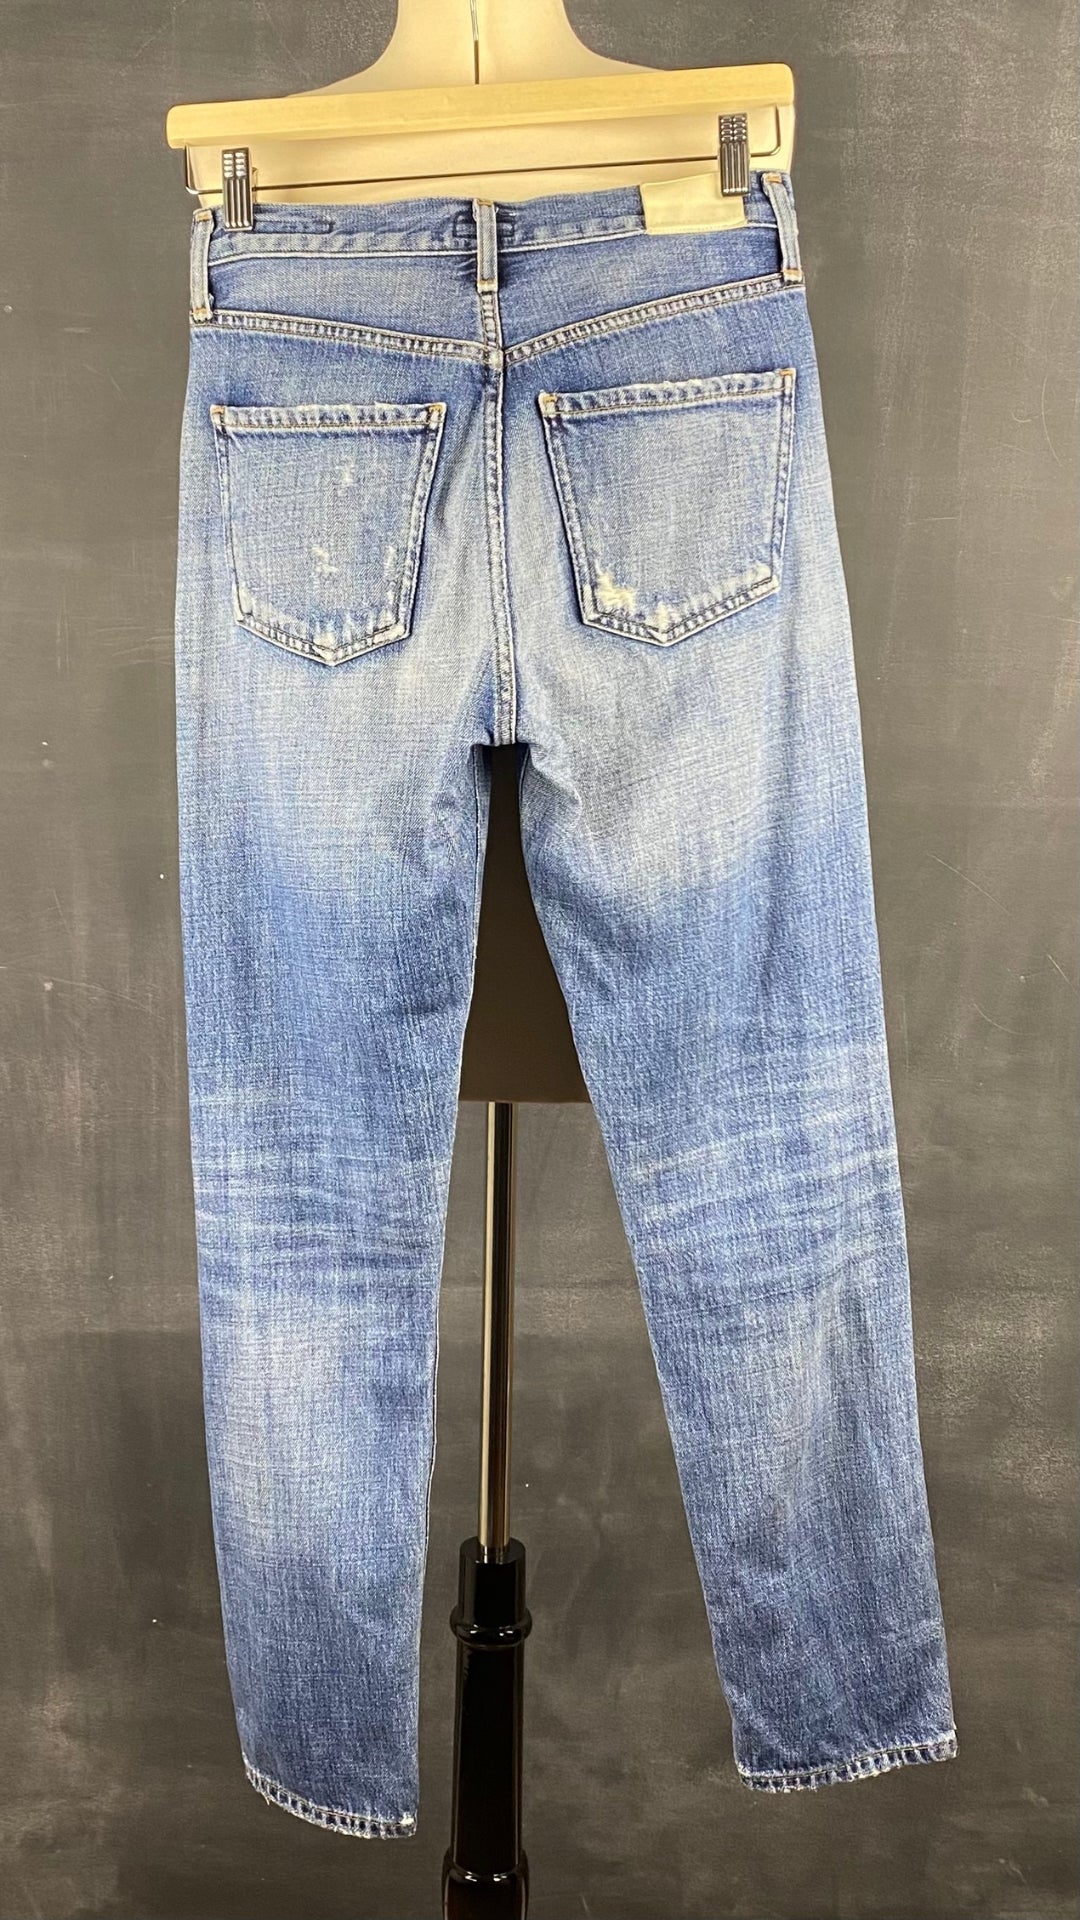 Jeans ajusté taille haute Citizens of Humanity, taille 23. Vue de dos.